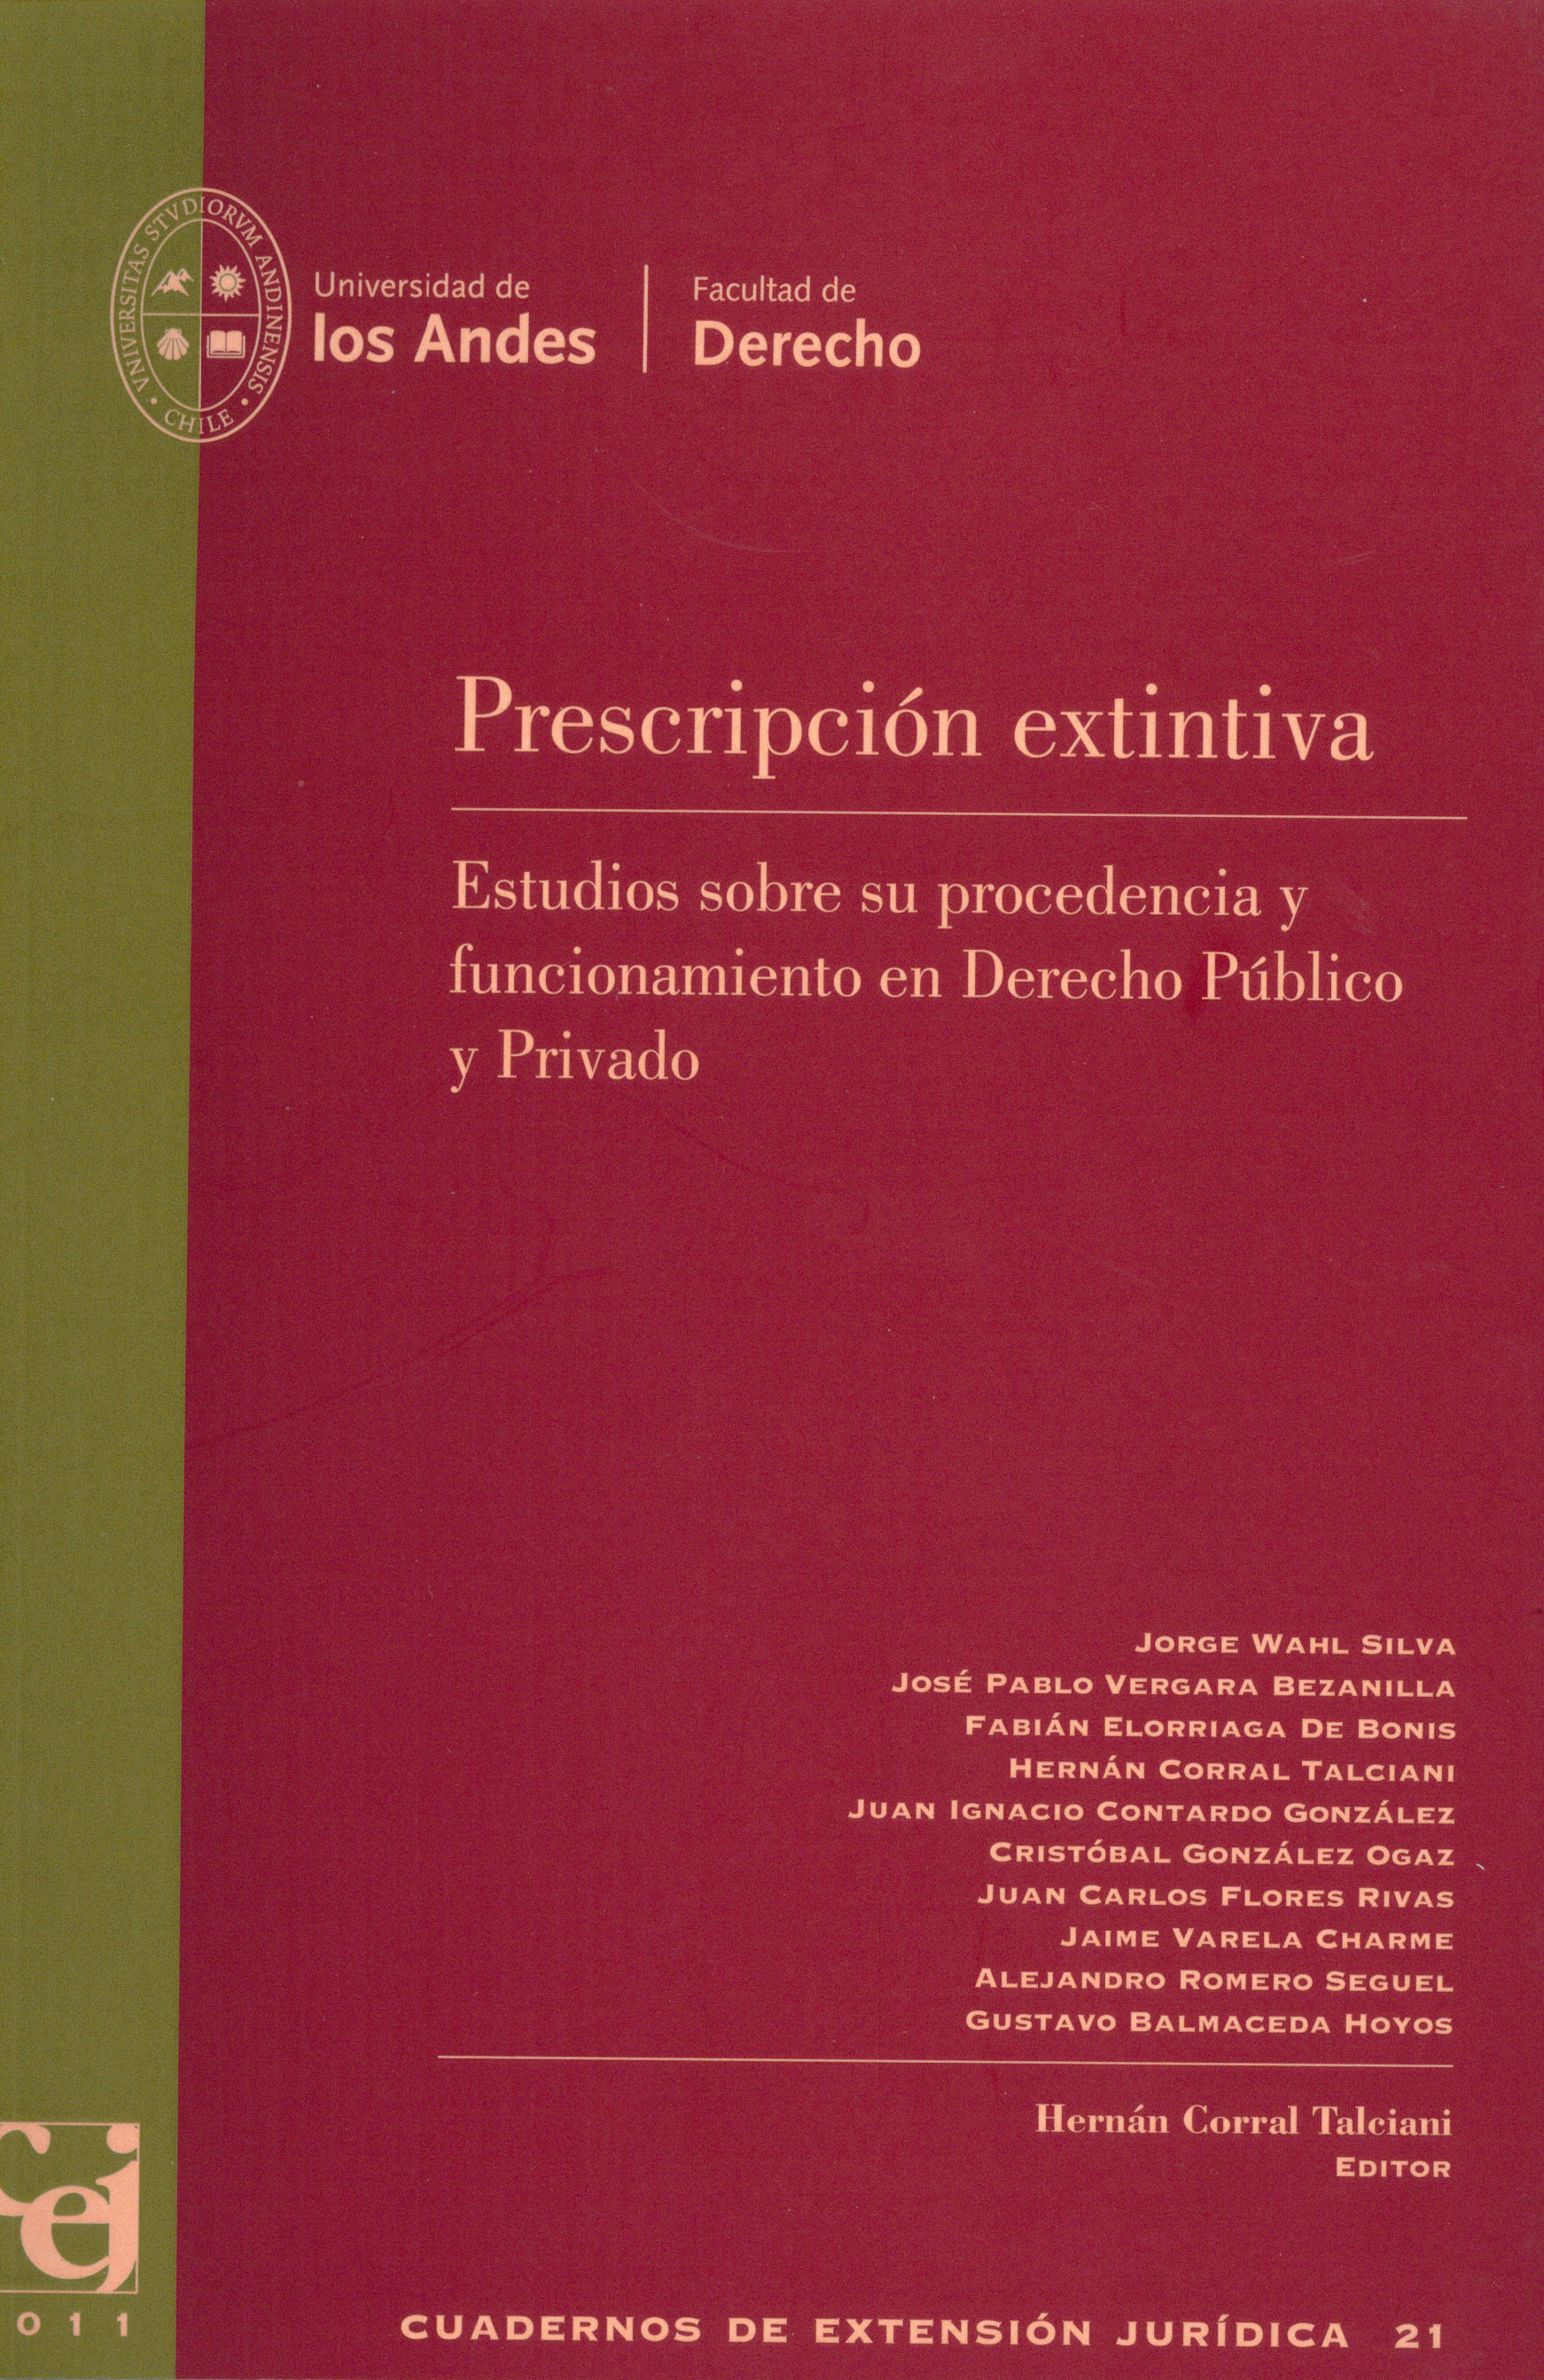 Prescripción extintiva: Estudios sobre su procedencia y funcionamiento en derecho público y privado